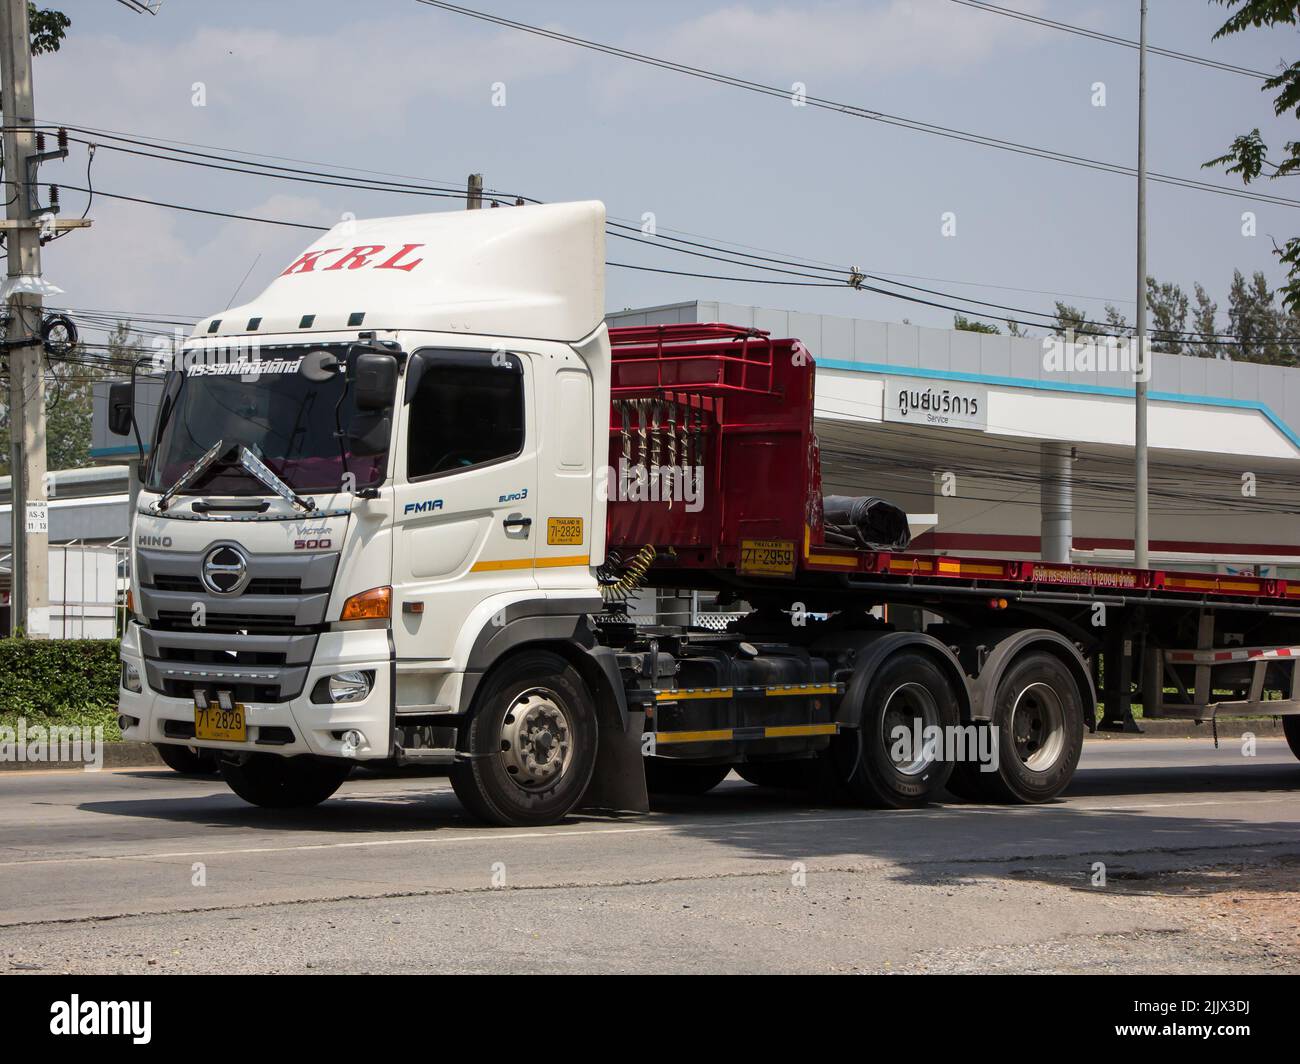 Chiangmai, Thaïlande - 21 avril 2022: Remorque conteneur camion de KRL transport. Photo sur la route n°1001 à environ 8 km du centre ville, thaïlande. Banque D'Images